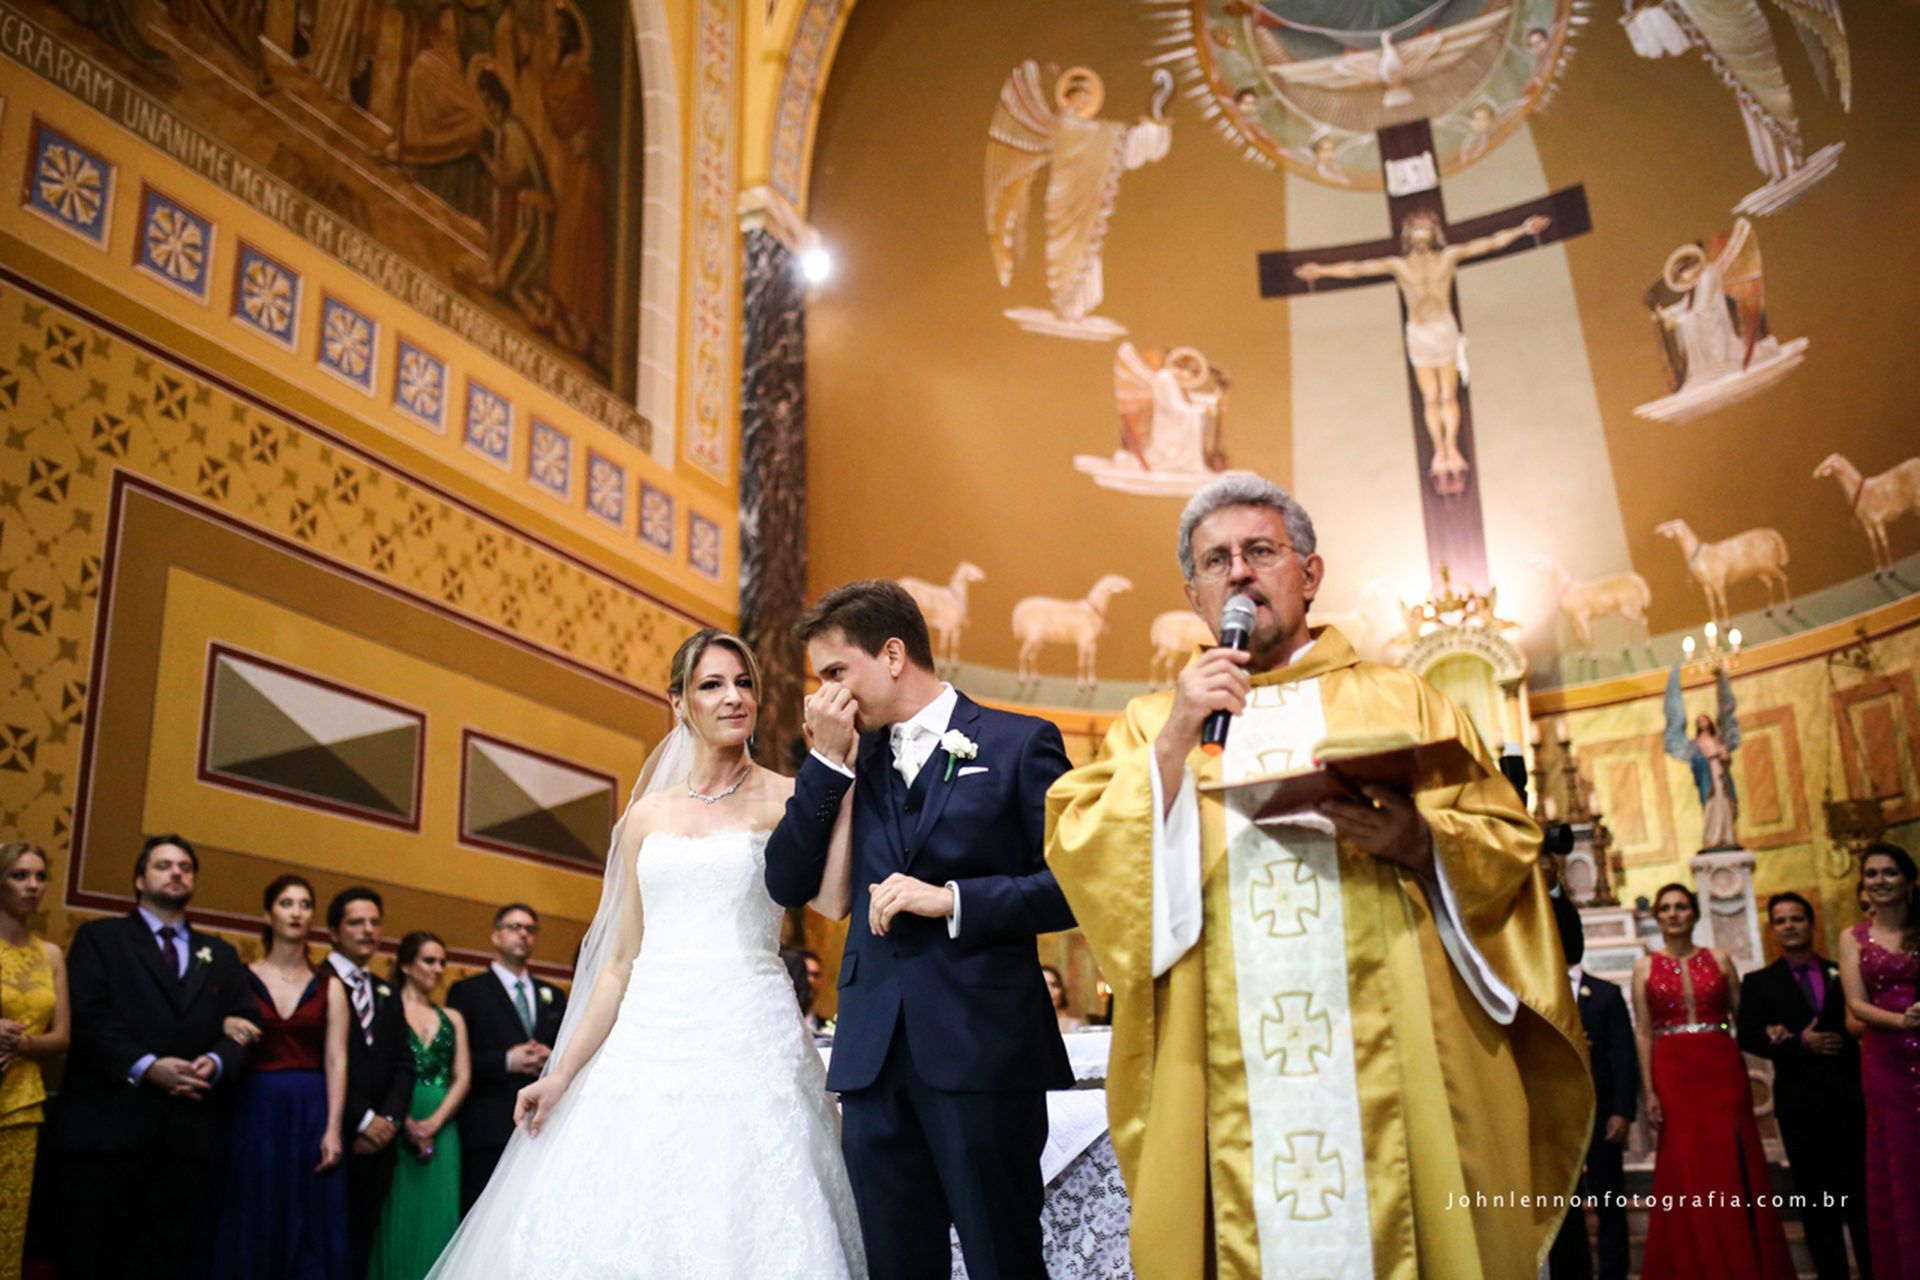 Casamento Carol & Francisco - São José do Rio Preto - SP - 07.11.2015